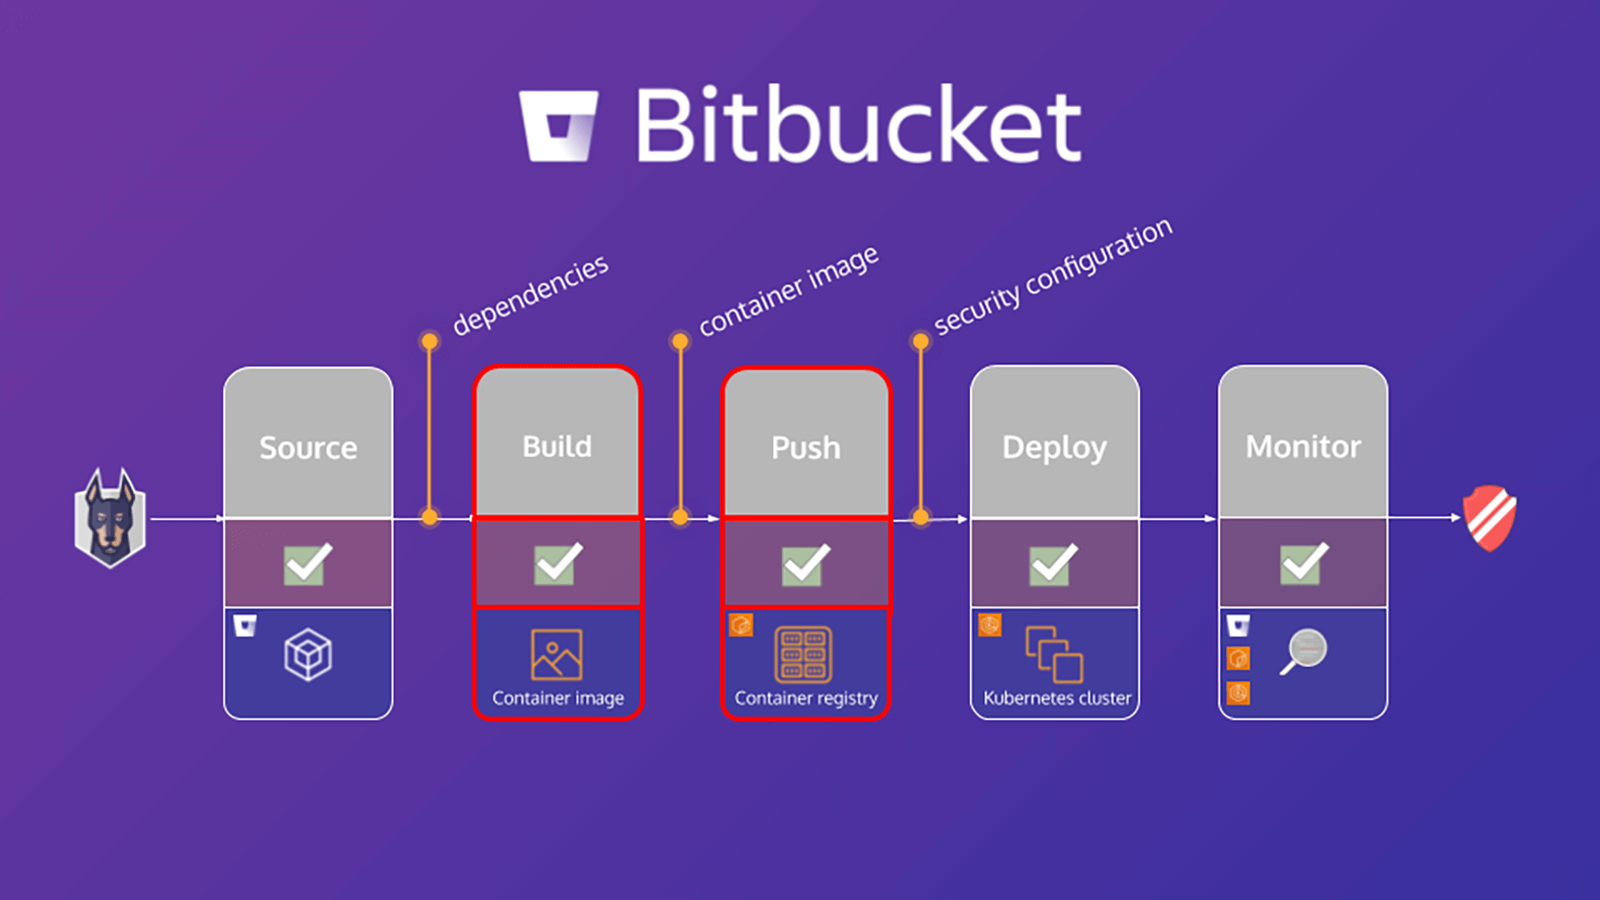 Diagrama do processo do Bitbucket